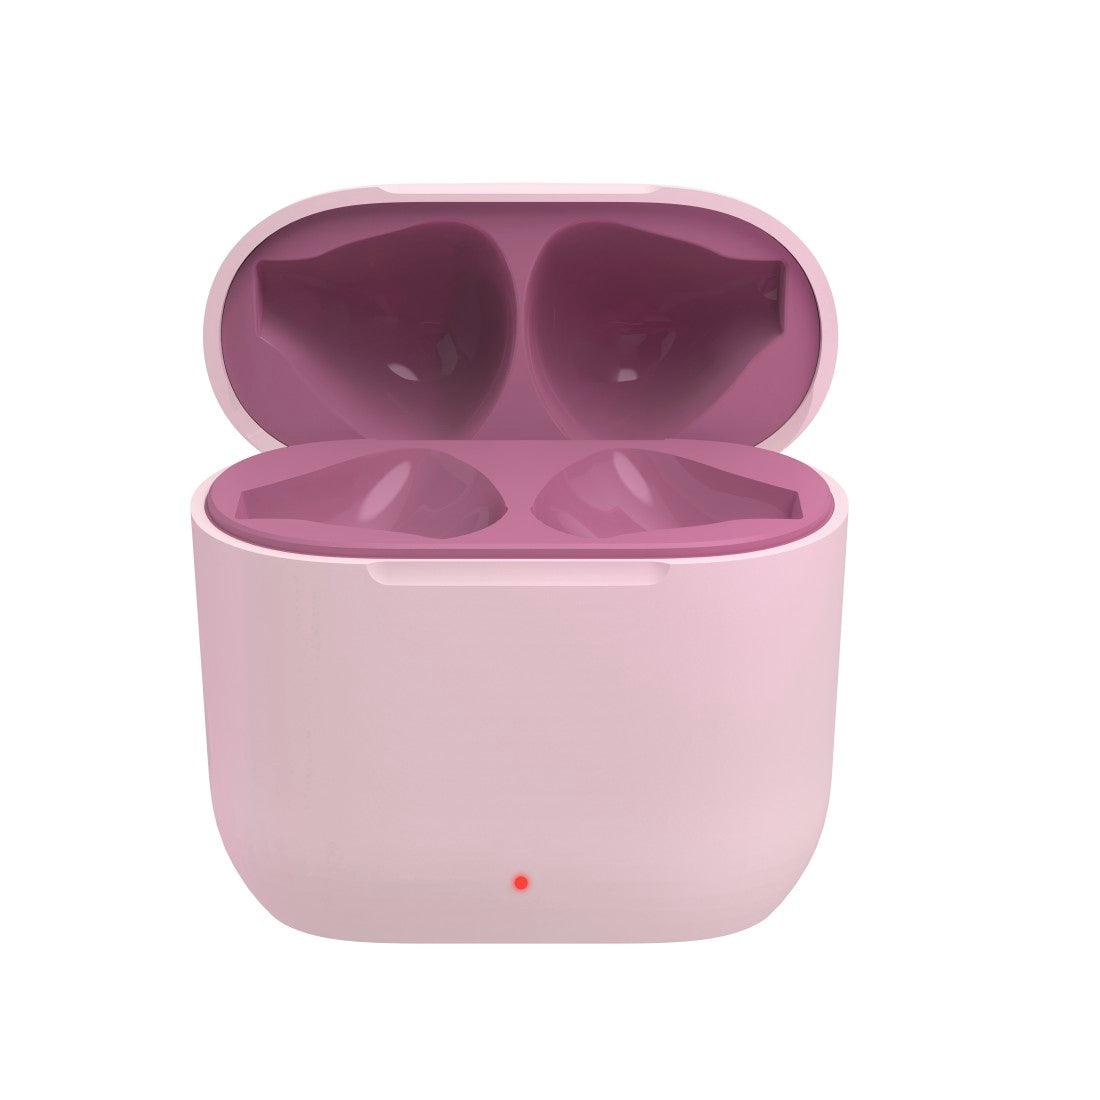 Hama Freedom Light In-Ear True Wireless Earbuds - Pink | 458964 (7519320113340)